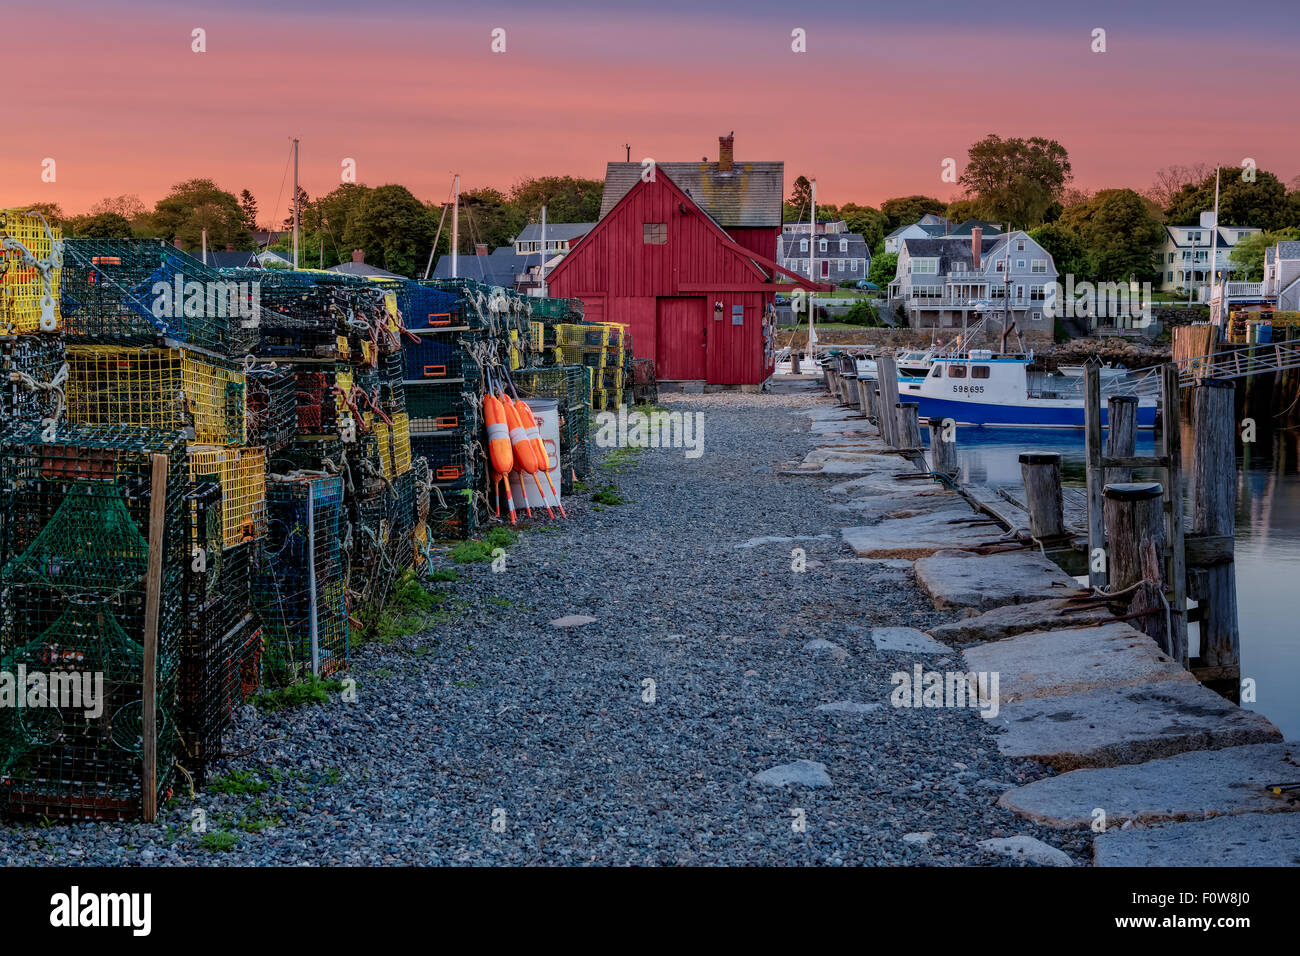 Prima luce a motivo numero uno - New England's iconico punto di riferimento di Bradley Wharf comunemente noto come motivo il numero uno durante la prima luce in Rockport, Massachusetts. Foto Stock